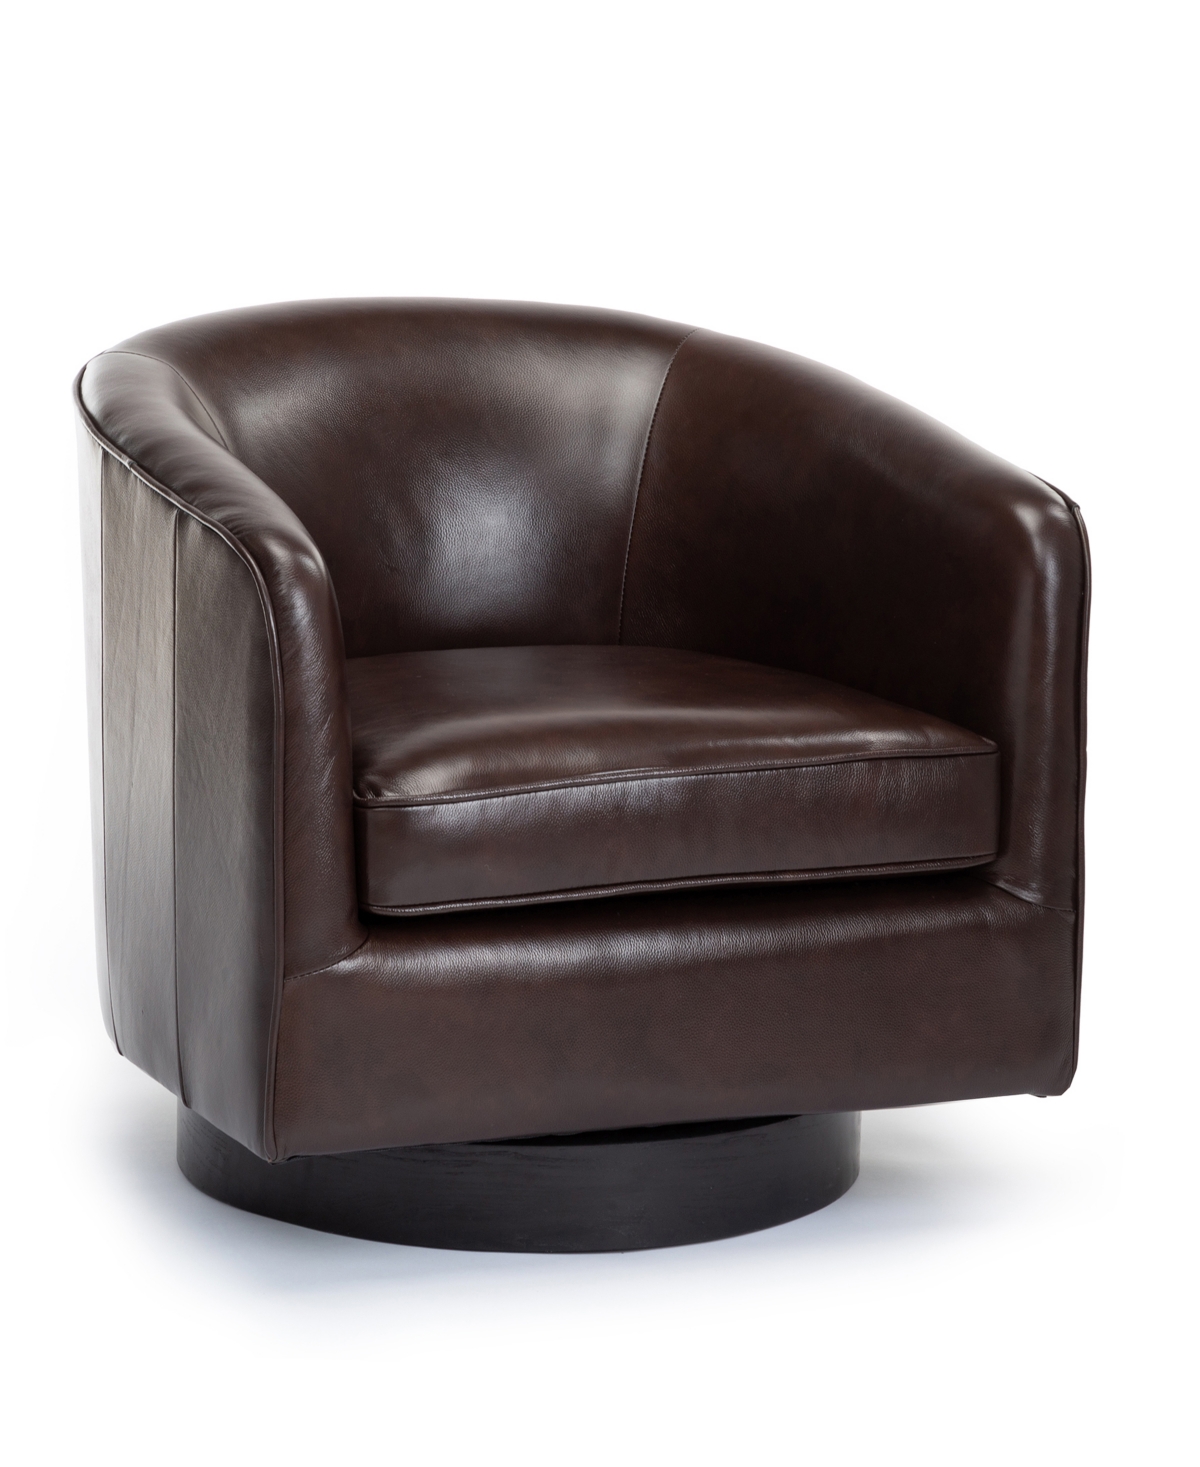 Comfort Pointe Turner Top Grain Leather Swivel Chair In Dark Brown